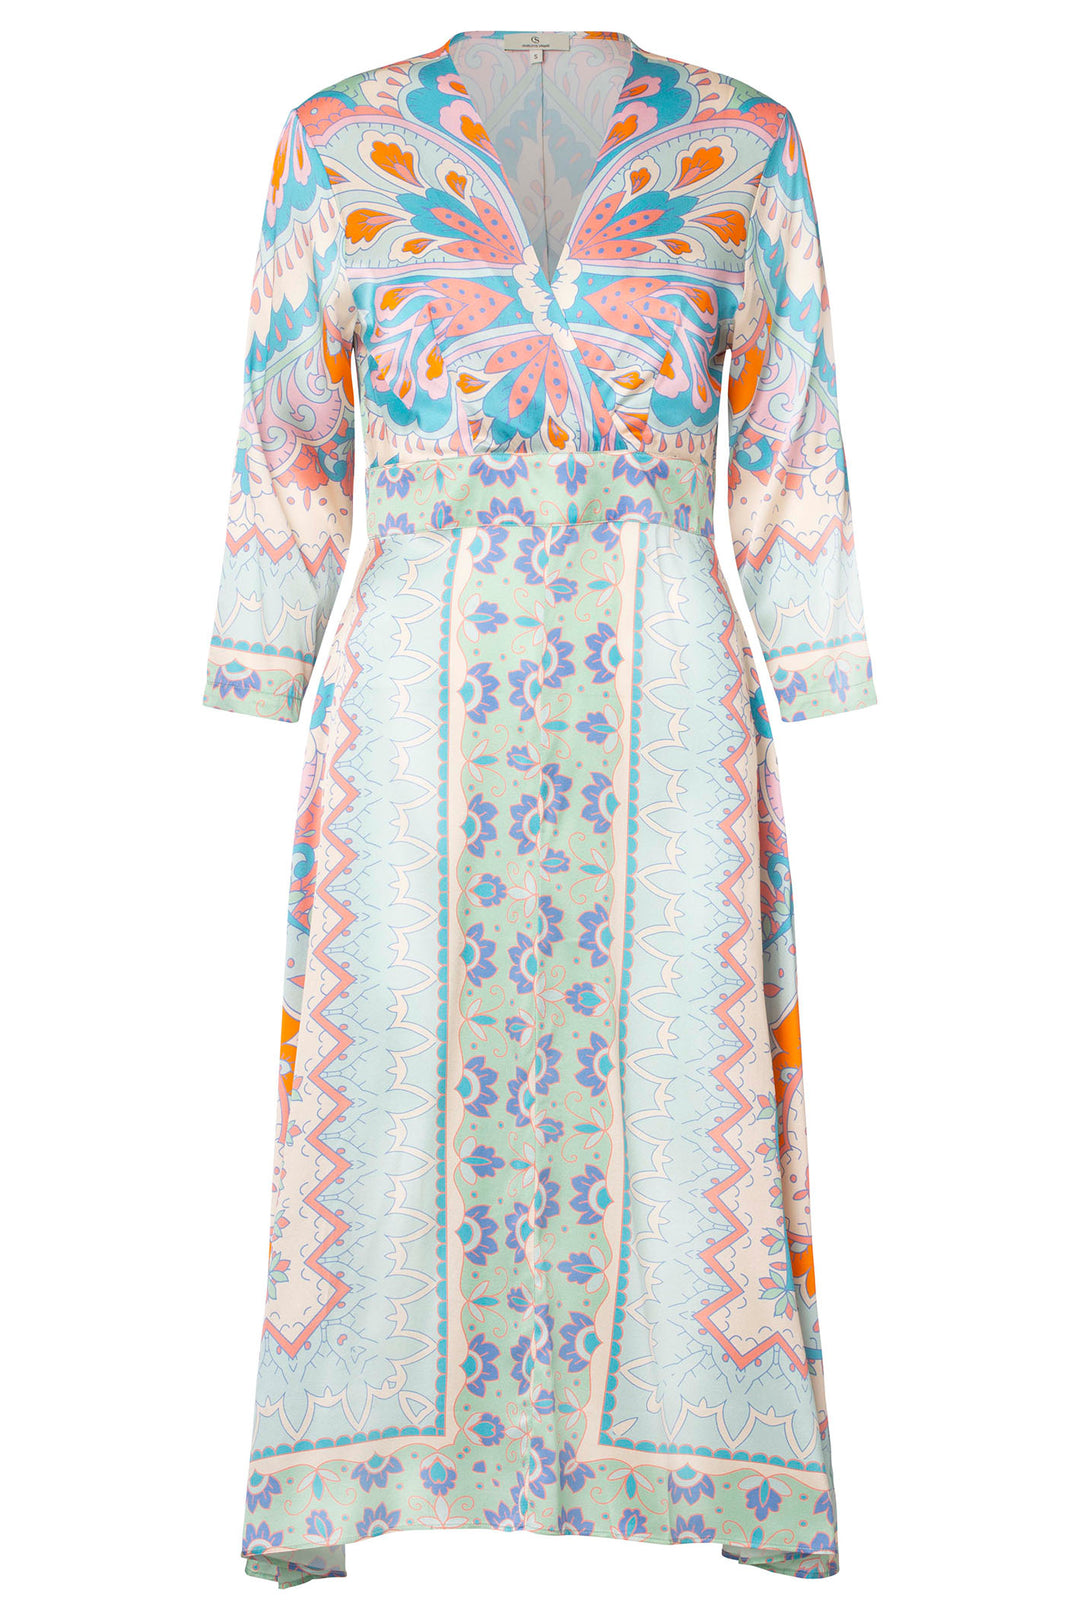 Charlotte Sparre 3143 Springtime Light Blue Square Print Dress - Olivia Grace Fashion